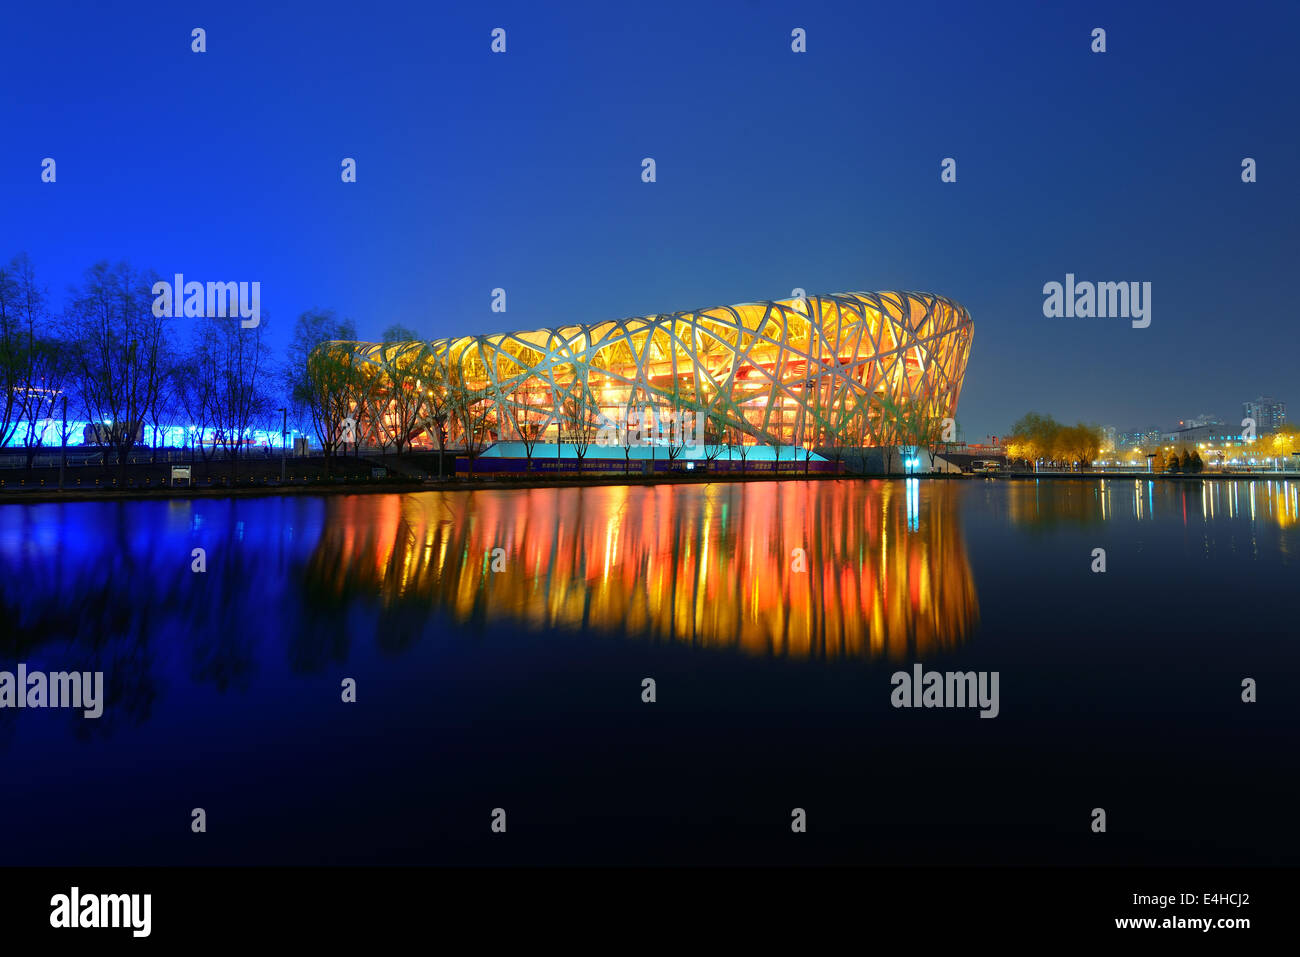 BEIJING, CHINA - APR 7: Estadio Nacional de Pekín en la noche del 7 de abril de 2013 en Beijing, China. El estadio fue creado para los Juegos Olímpicos y Paralímpicos de Verano de 2008. Foto de stock